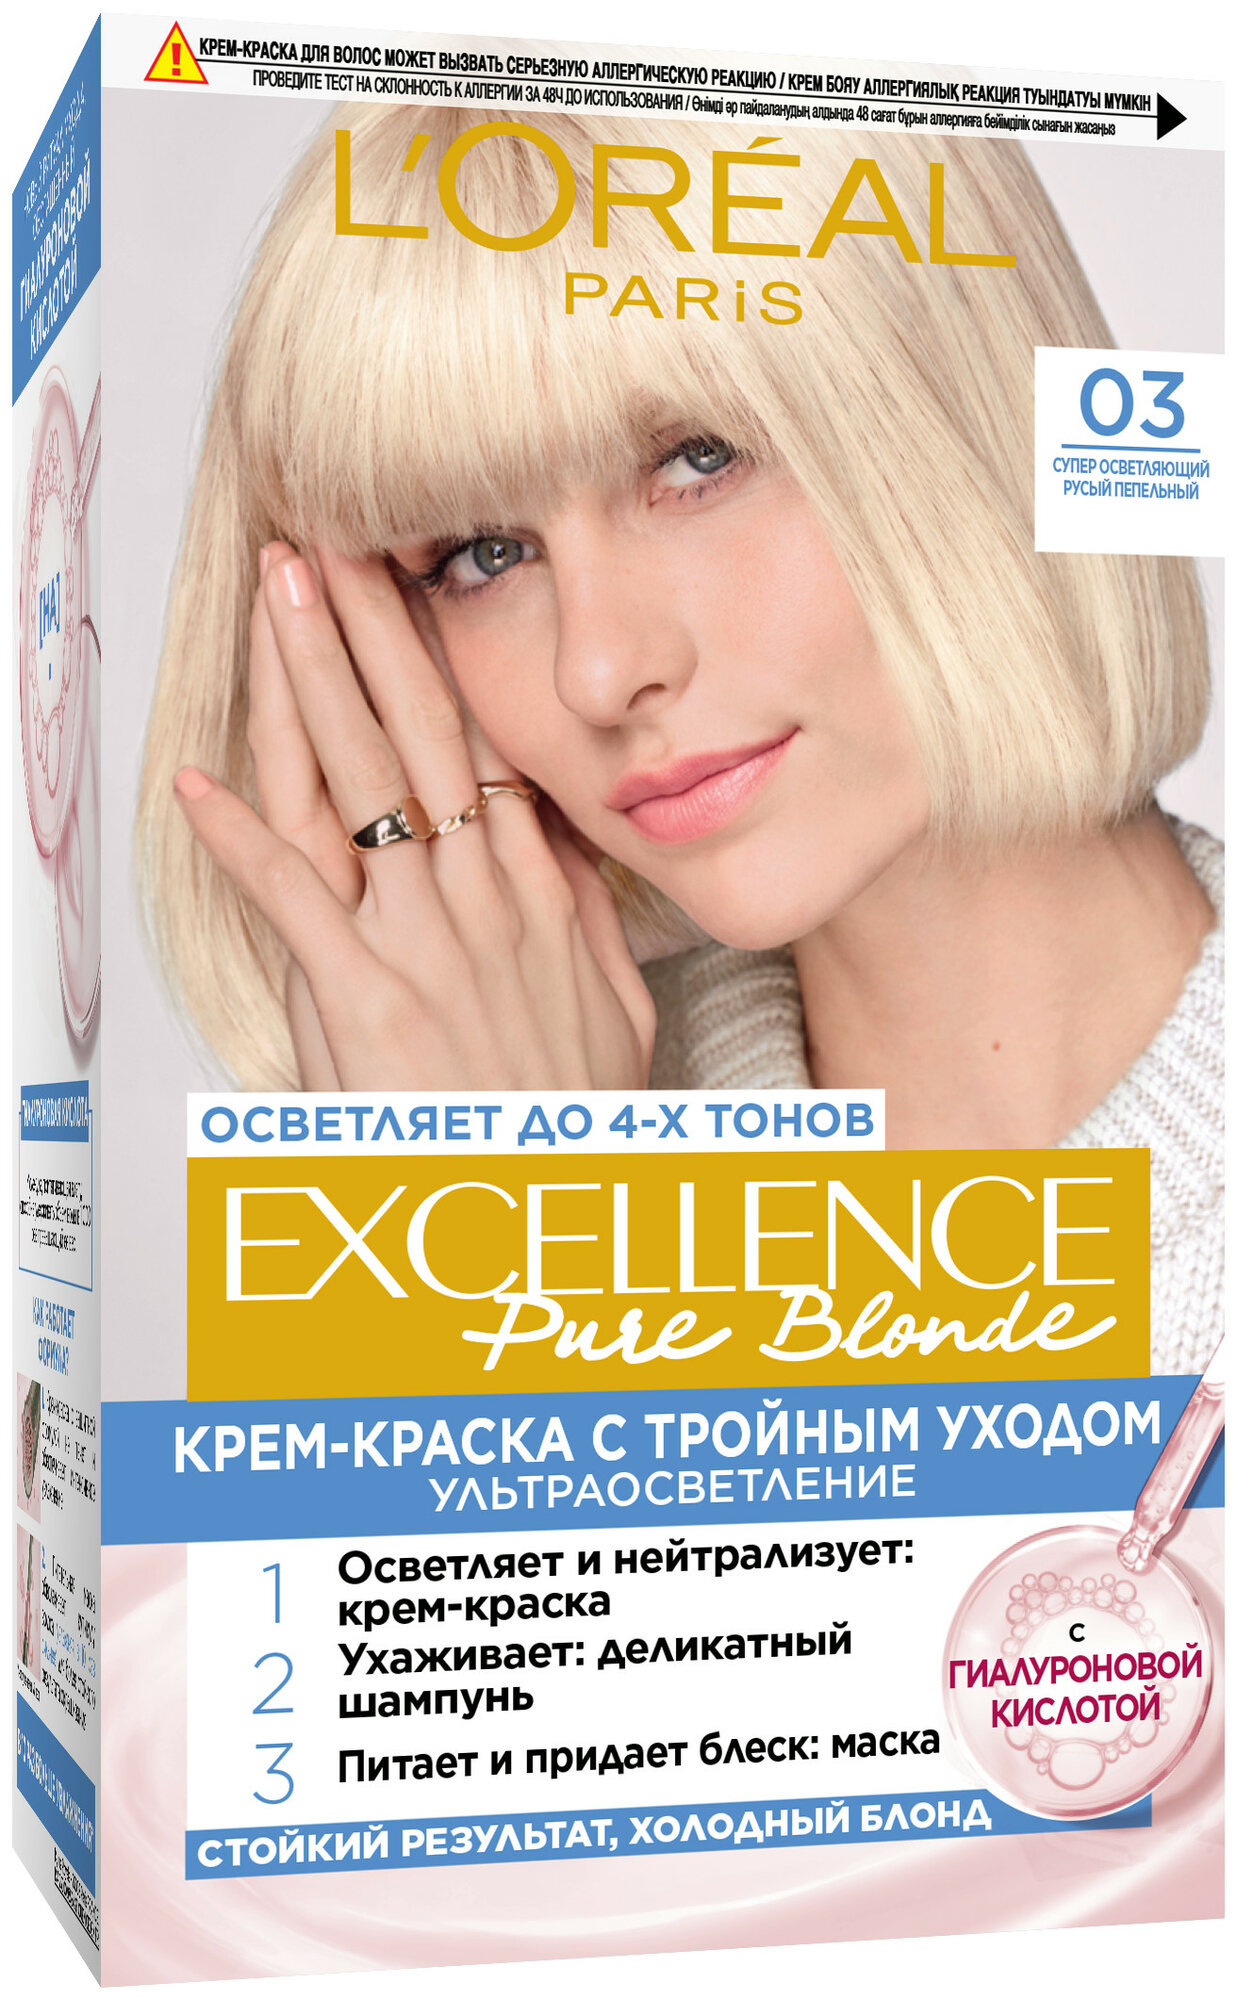 L'Oreal Paris Excellence стойкая крем-краска для волос, 03 суперосветляющий русый пепельный